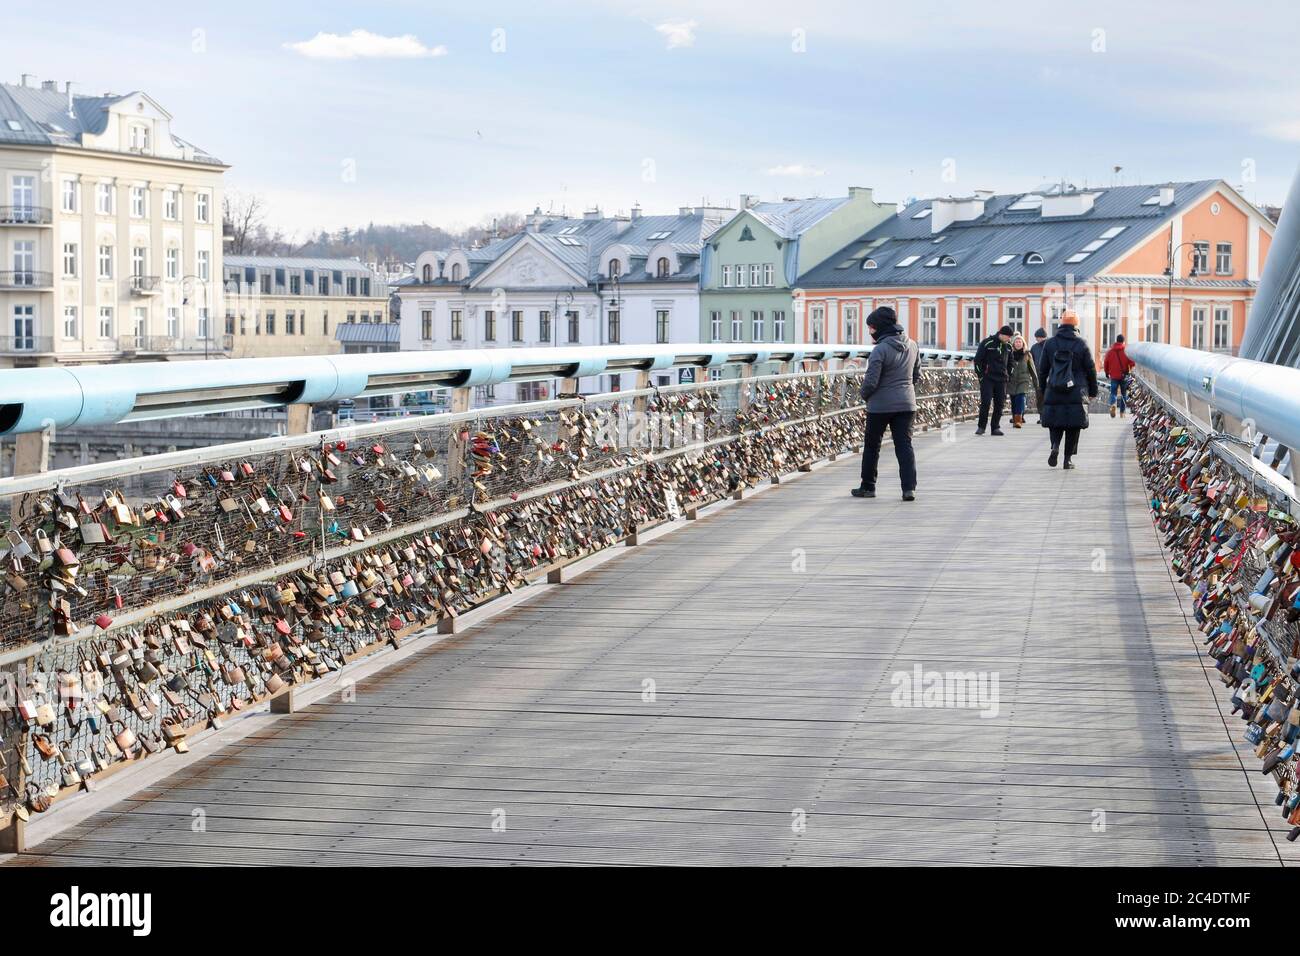 The Kladka Bernatka- bridge of love with love padlocks in Krakow, Poland. Stock Photo